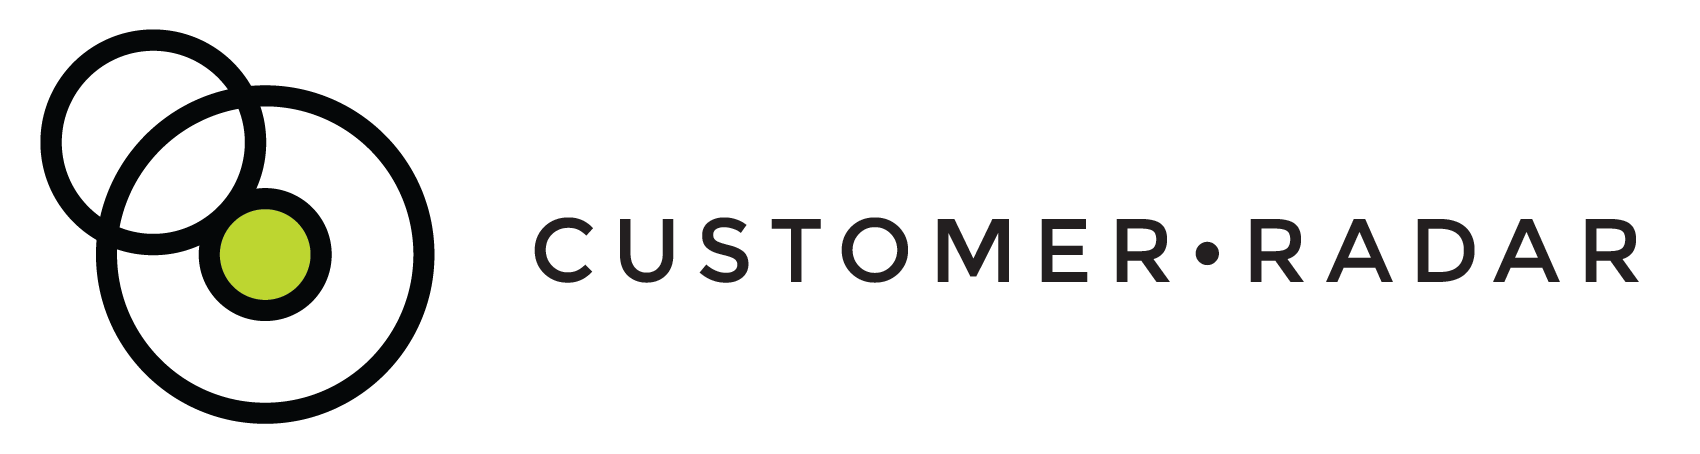 Customer Radar logo white bg